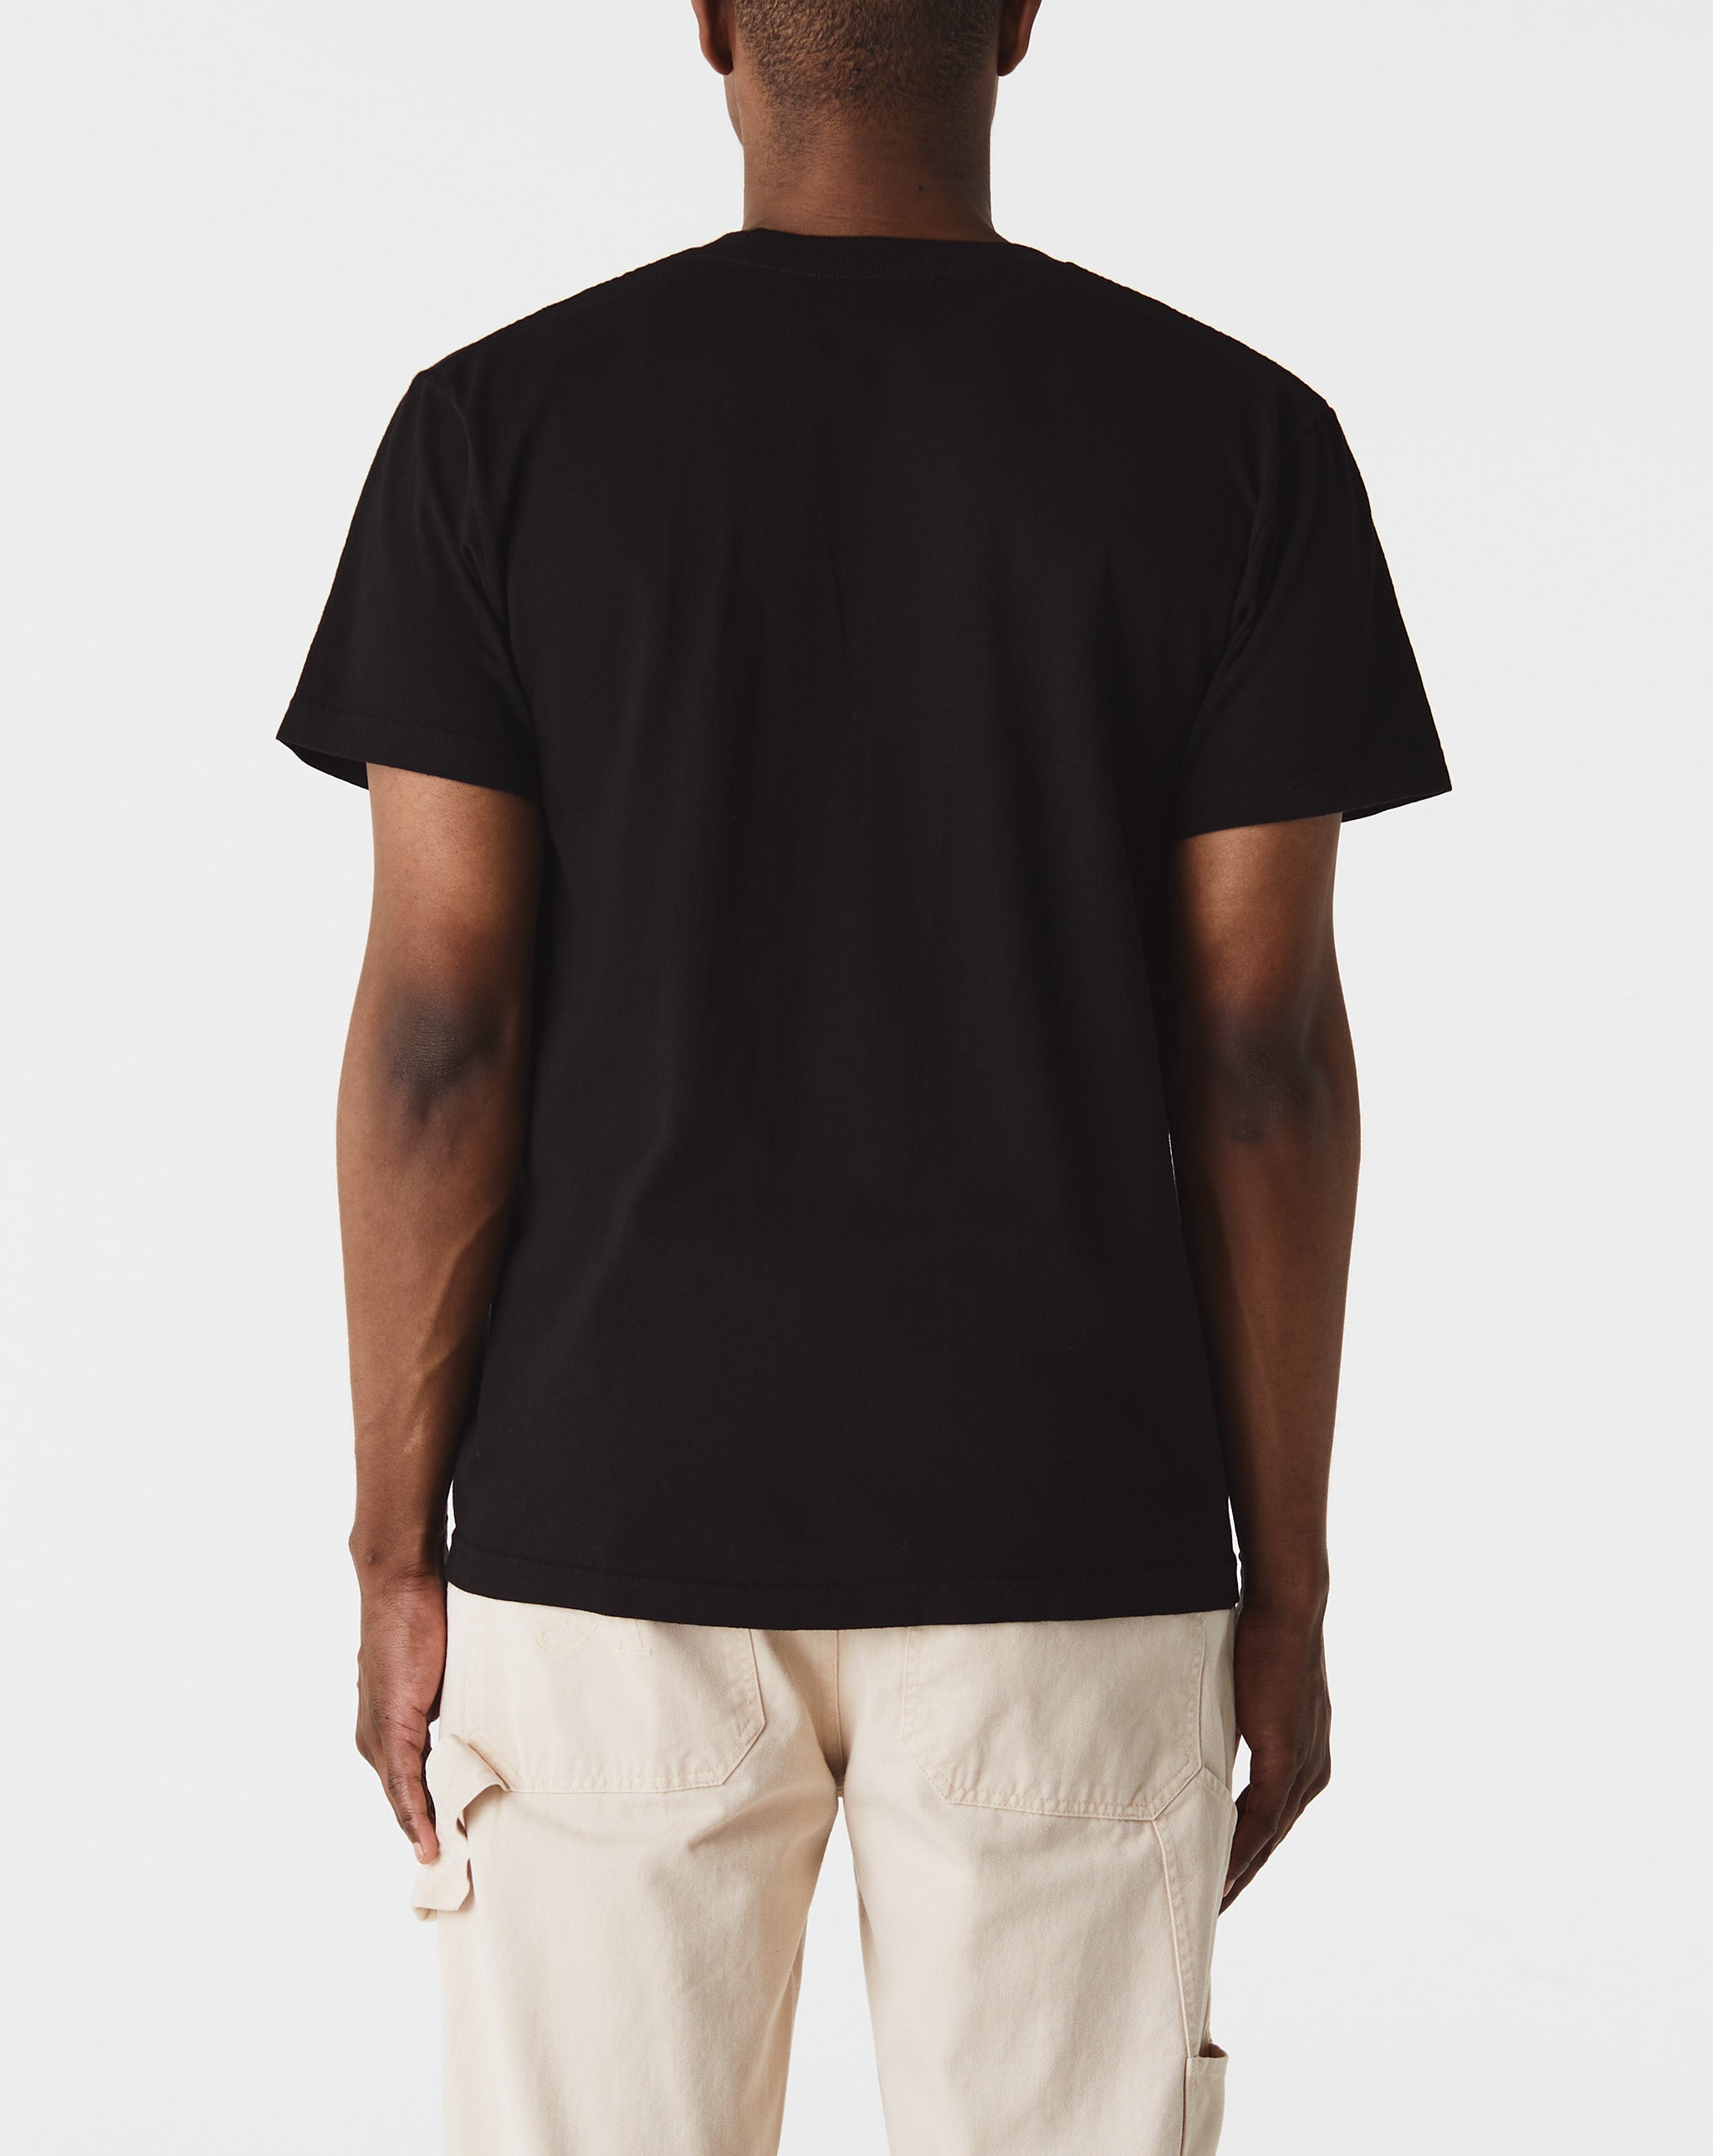 Awake NY Vegas T-Shirt  - Cheap 127-0 Jordan outlet